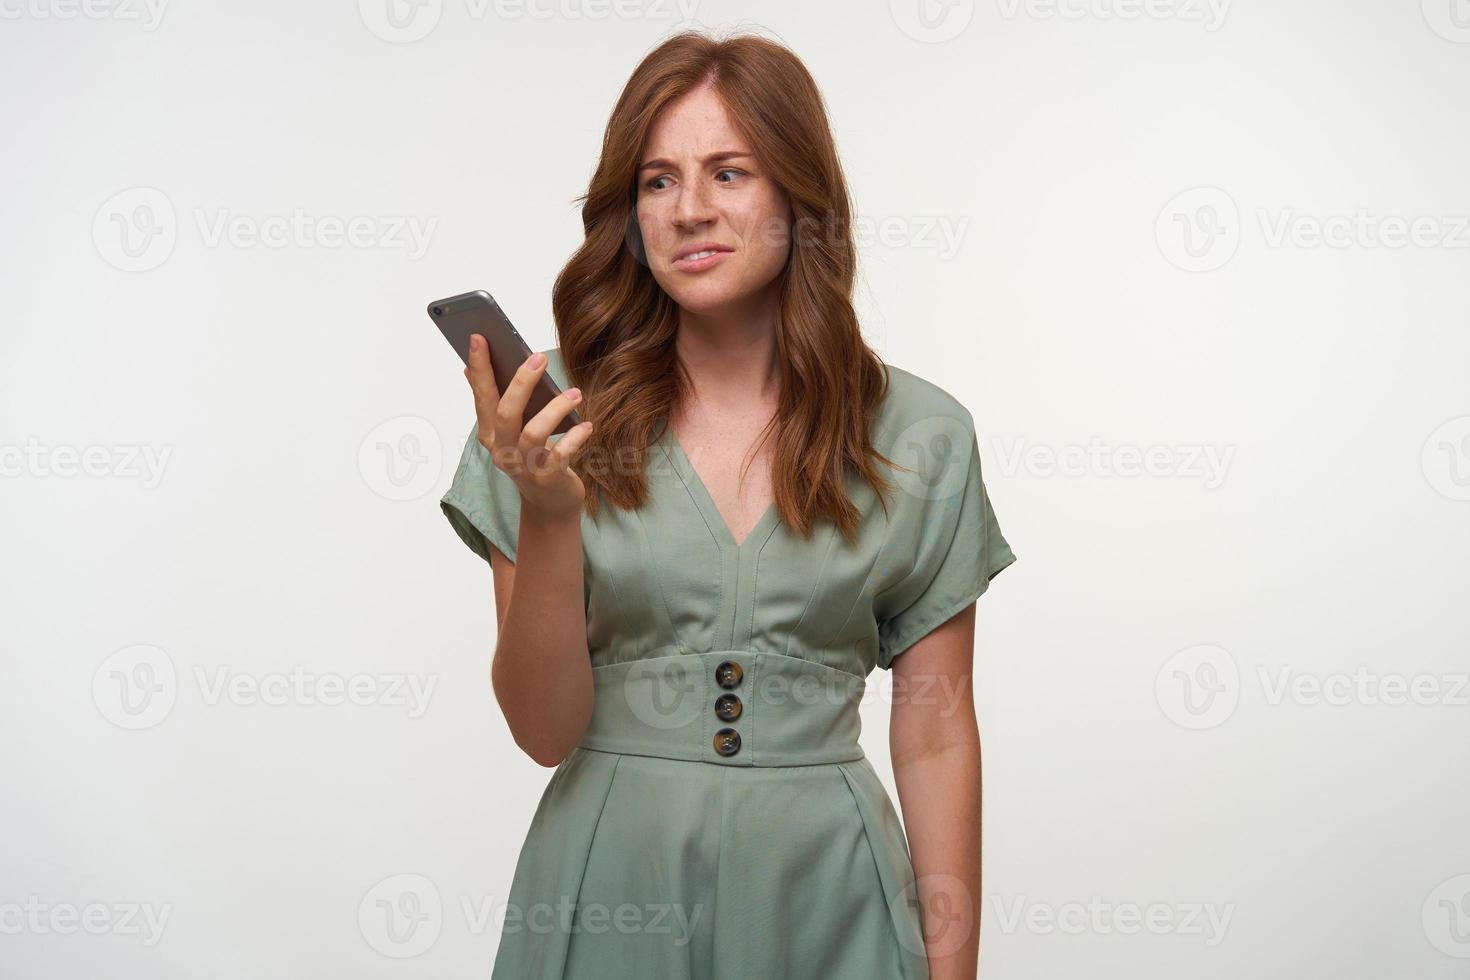 förbryllad vacker kvinna med lockigt rött hår som håller smartphone i handen, tittar på skärmen med förvirrat ansikte, poserar över vit bakgrund foto